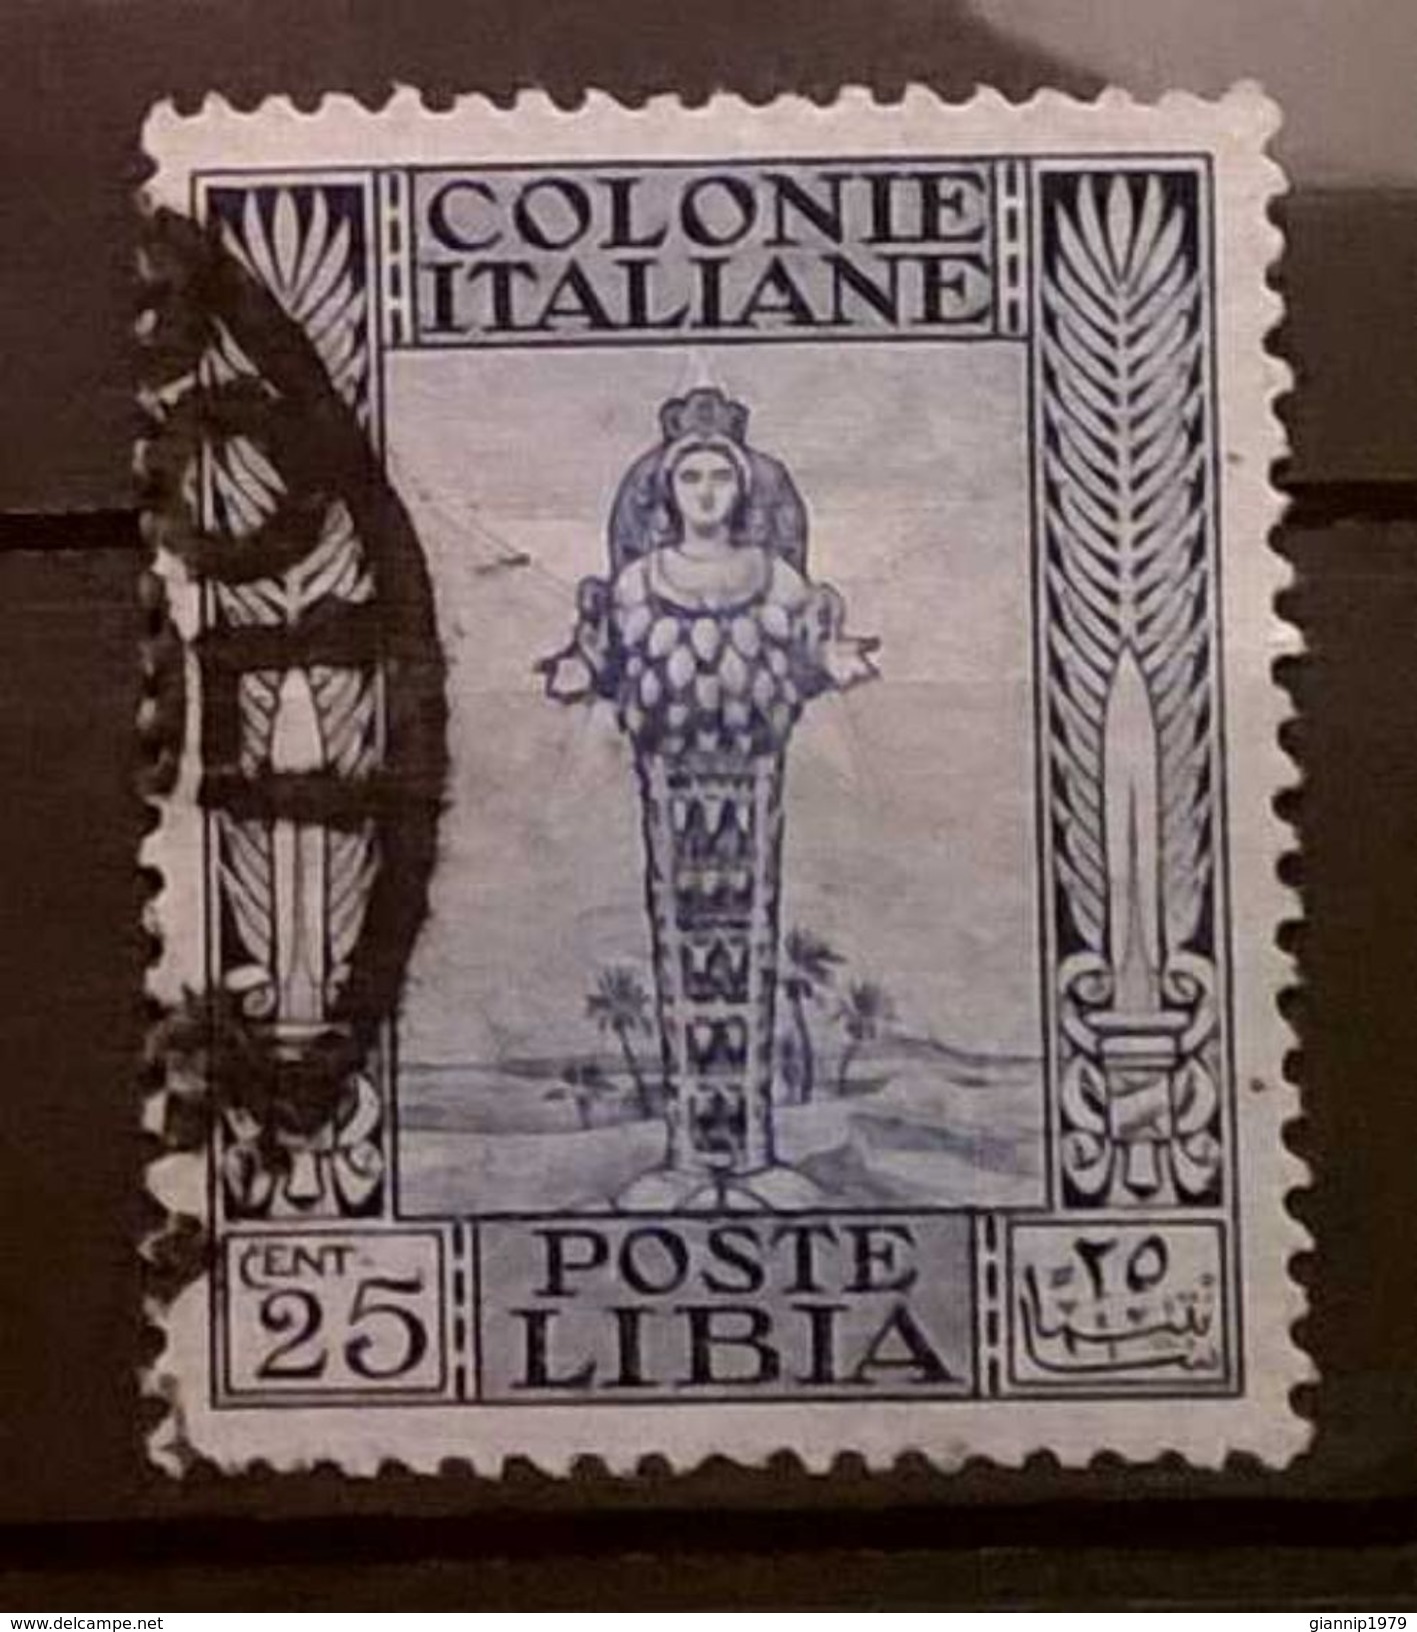 FRANCOBOLLI STAMPS ITALIA ITALY 1921 COLONIA LIBIA SERIE ANTICHE - Libië